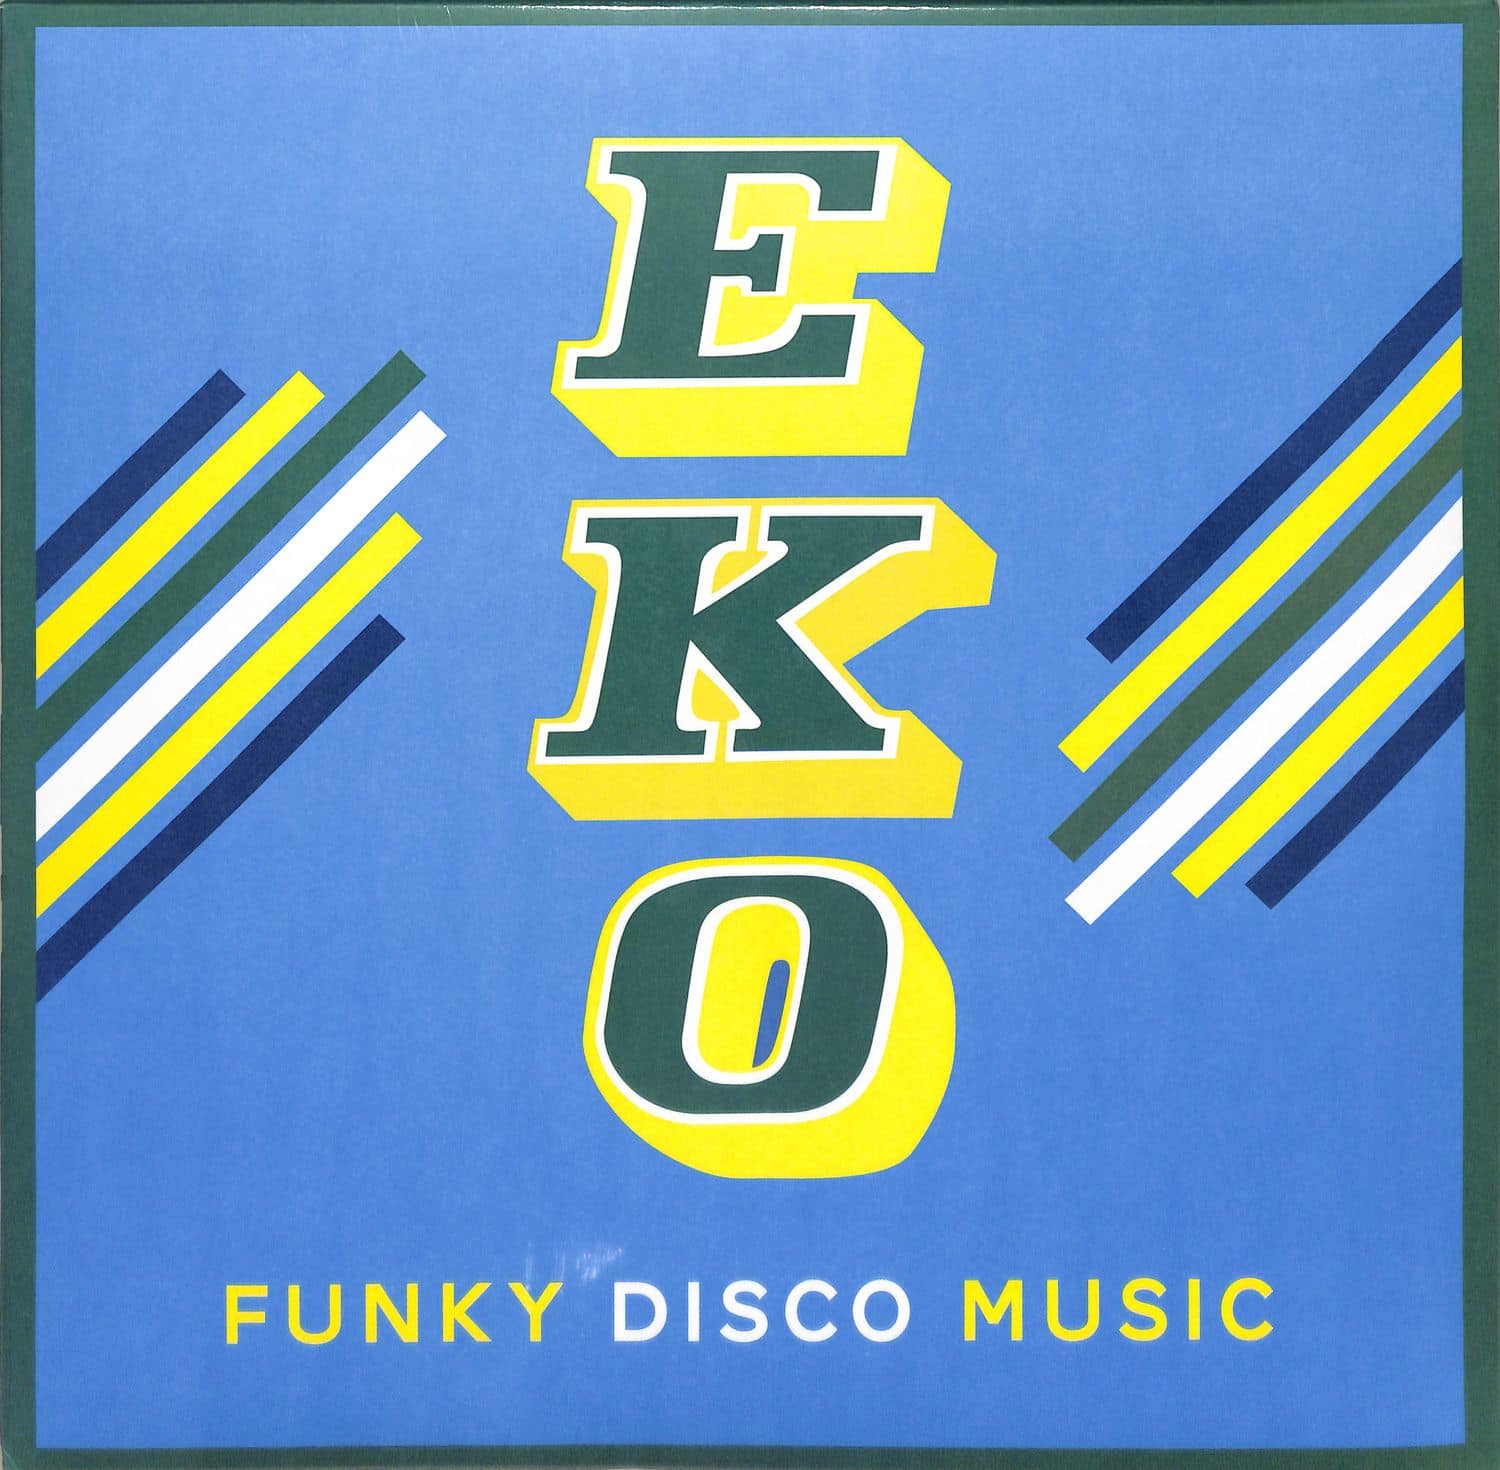 Eko - FUNKY DISCO MUSIC 